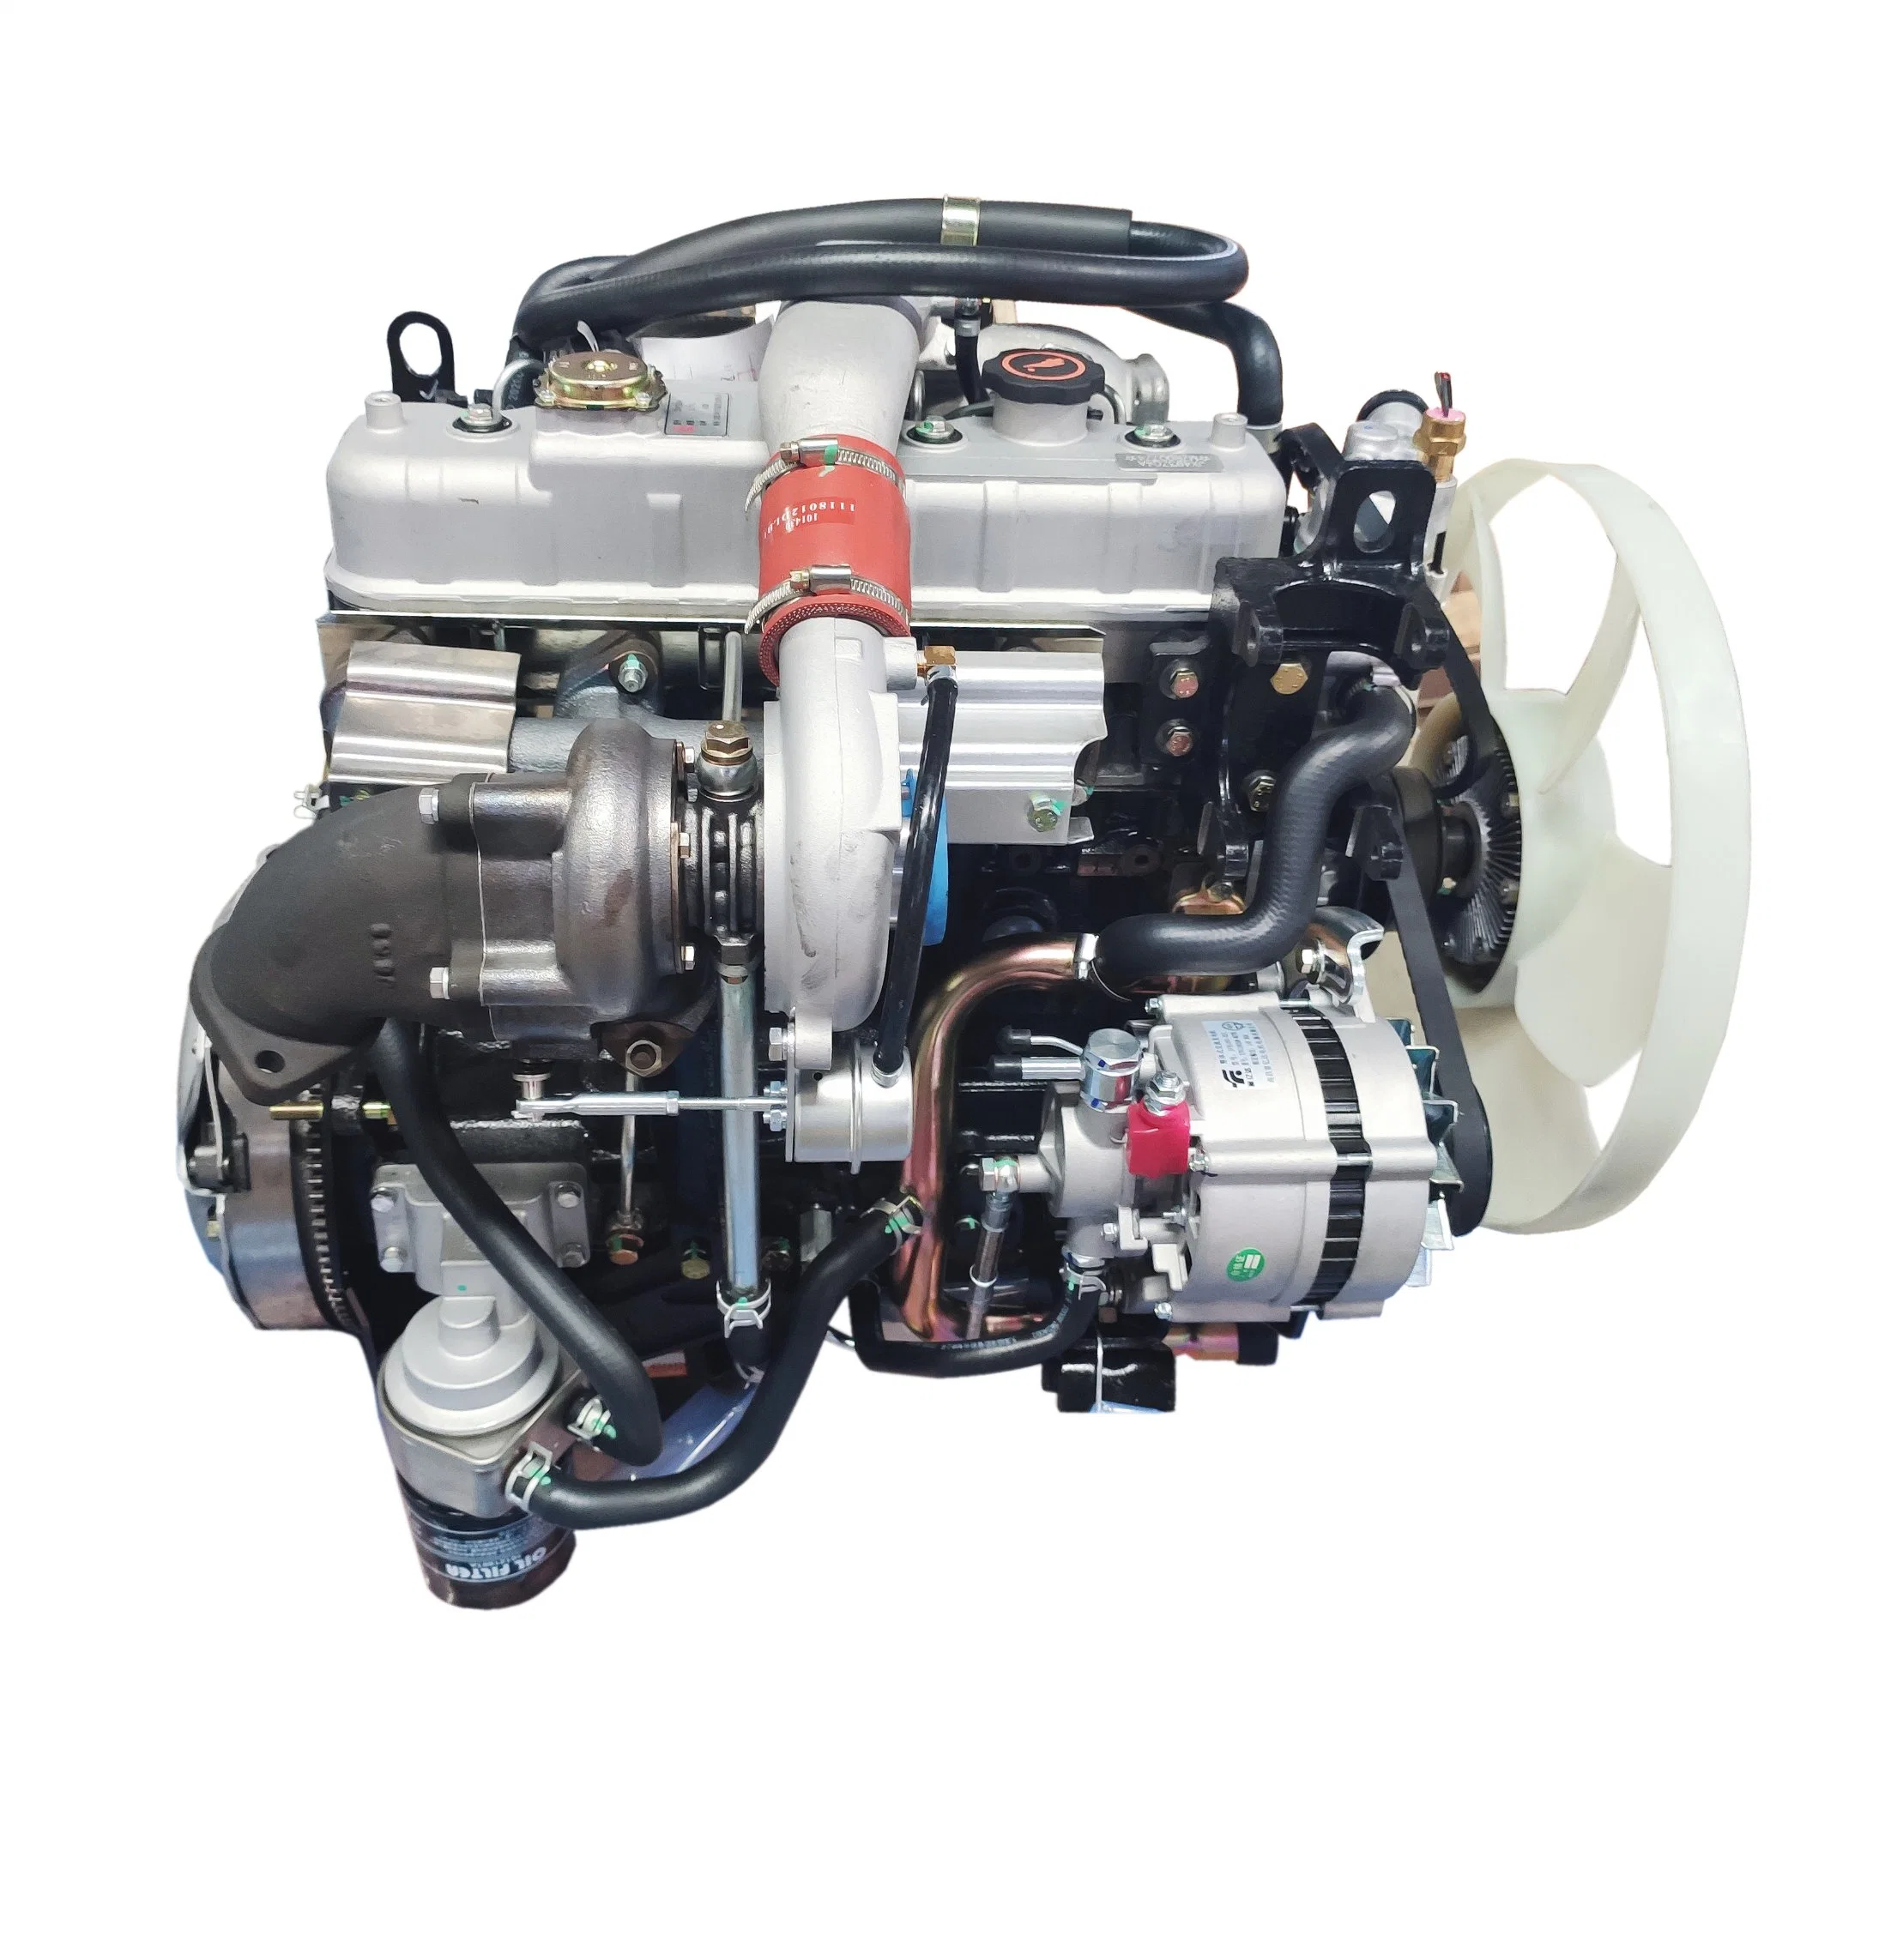 Moteur diesel/moteur de camion/moteur de refroidissement à eau 4 cylindres 68 kW 4jb1/4jb1t pour camion SUV Moteur diesel marin Moteur de bateau pour navire